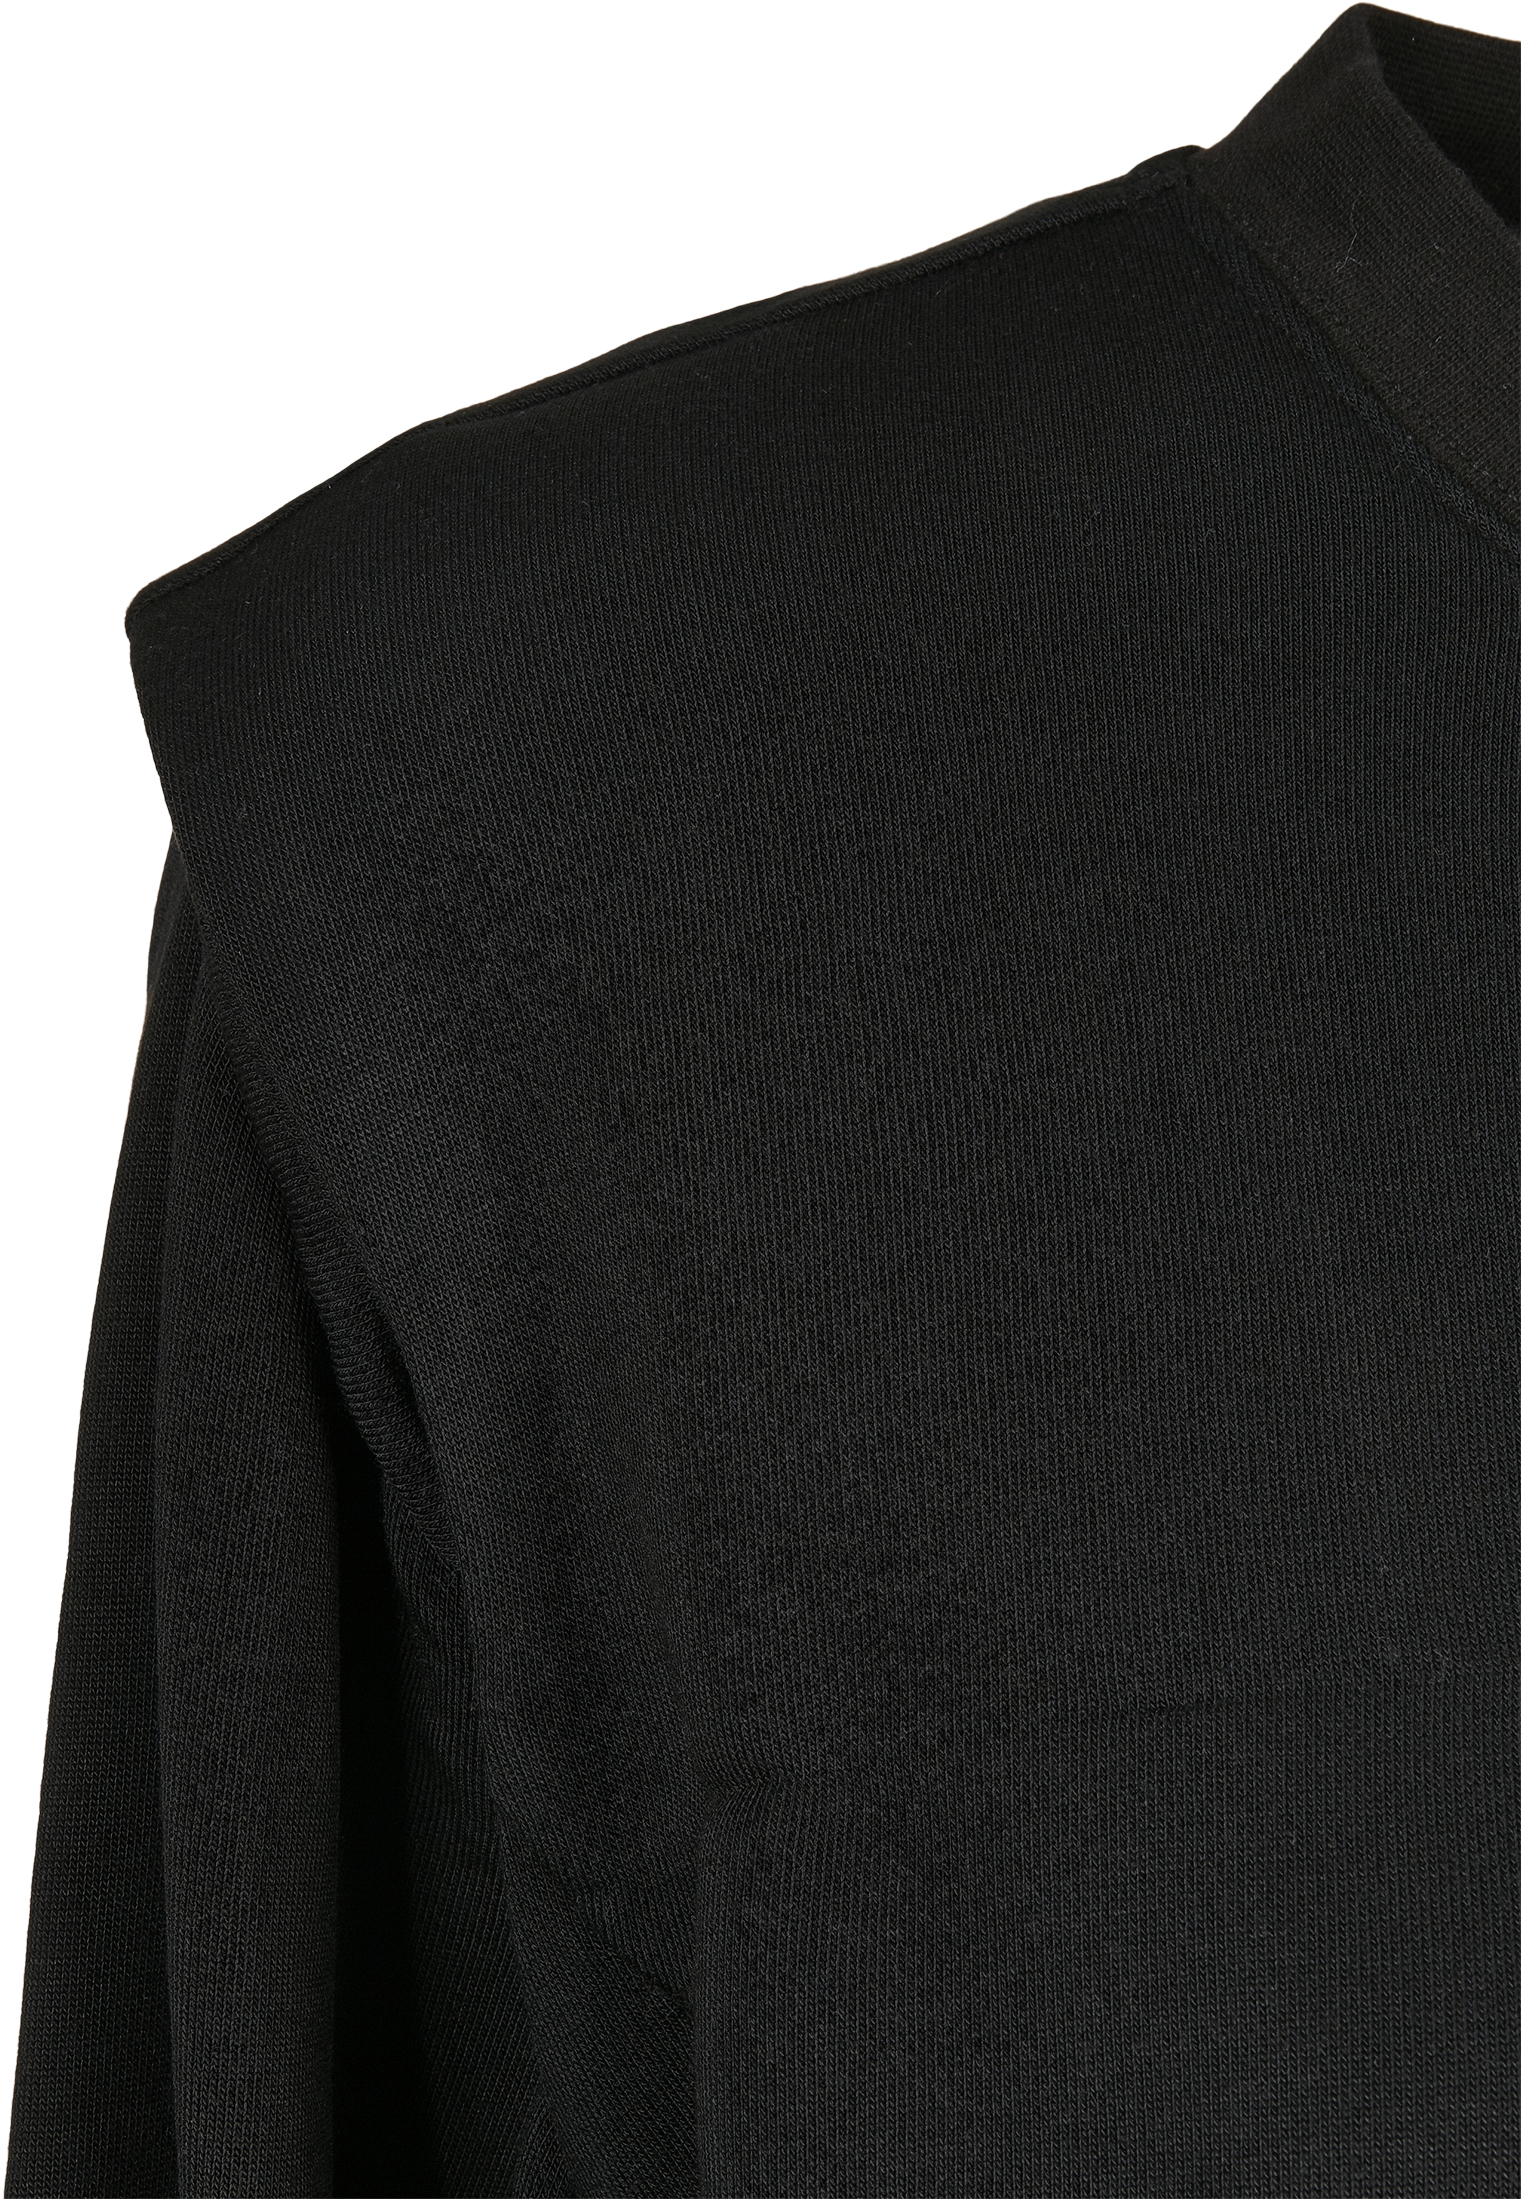 Crewnecks & Longsleeves Ladies Padded Shoulder Modal Terry Crewneck in Farbe black